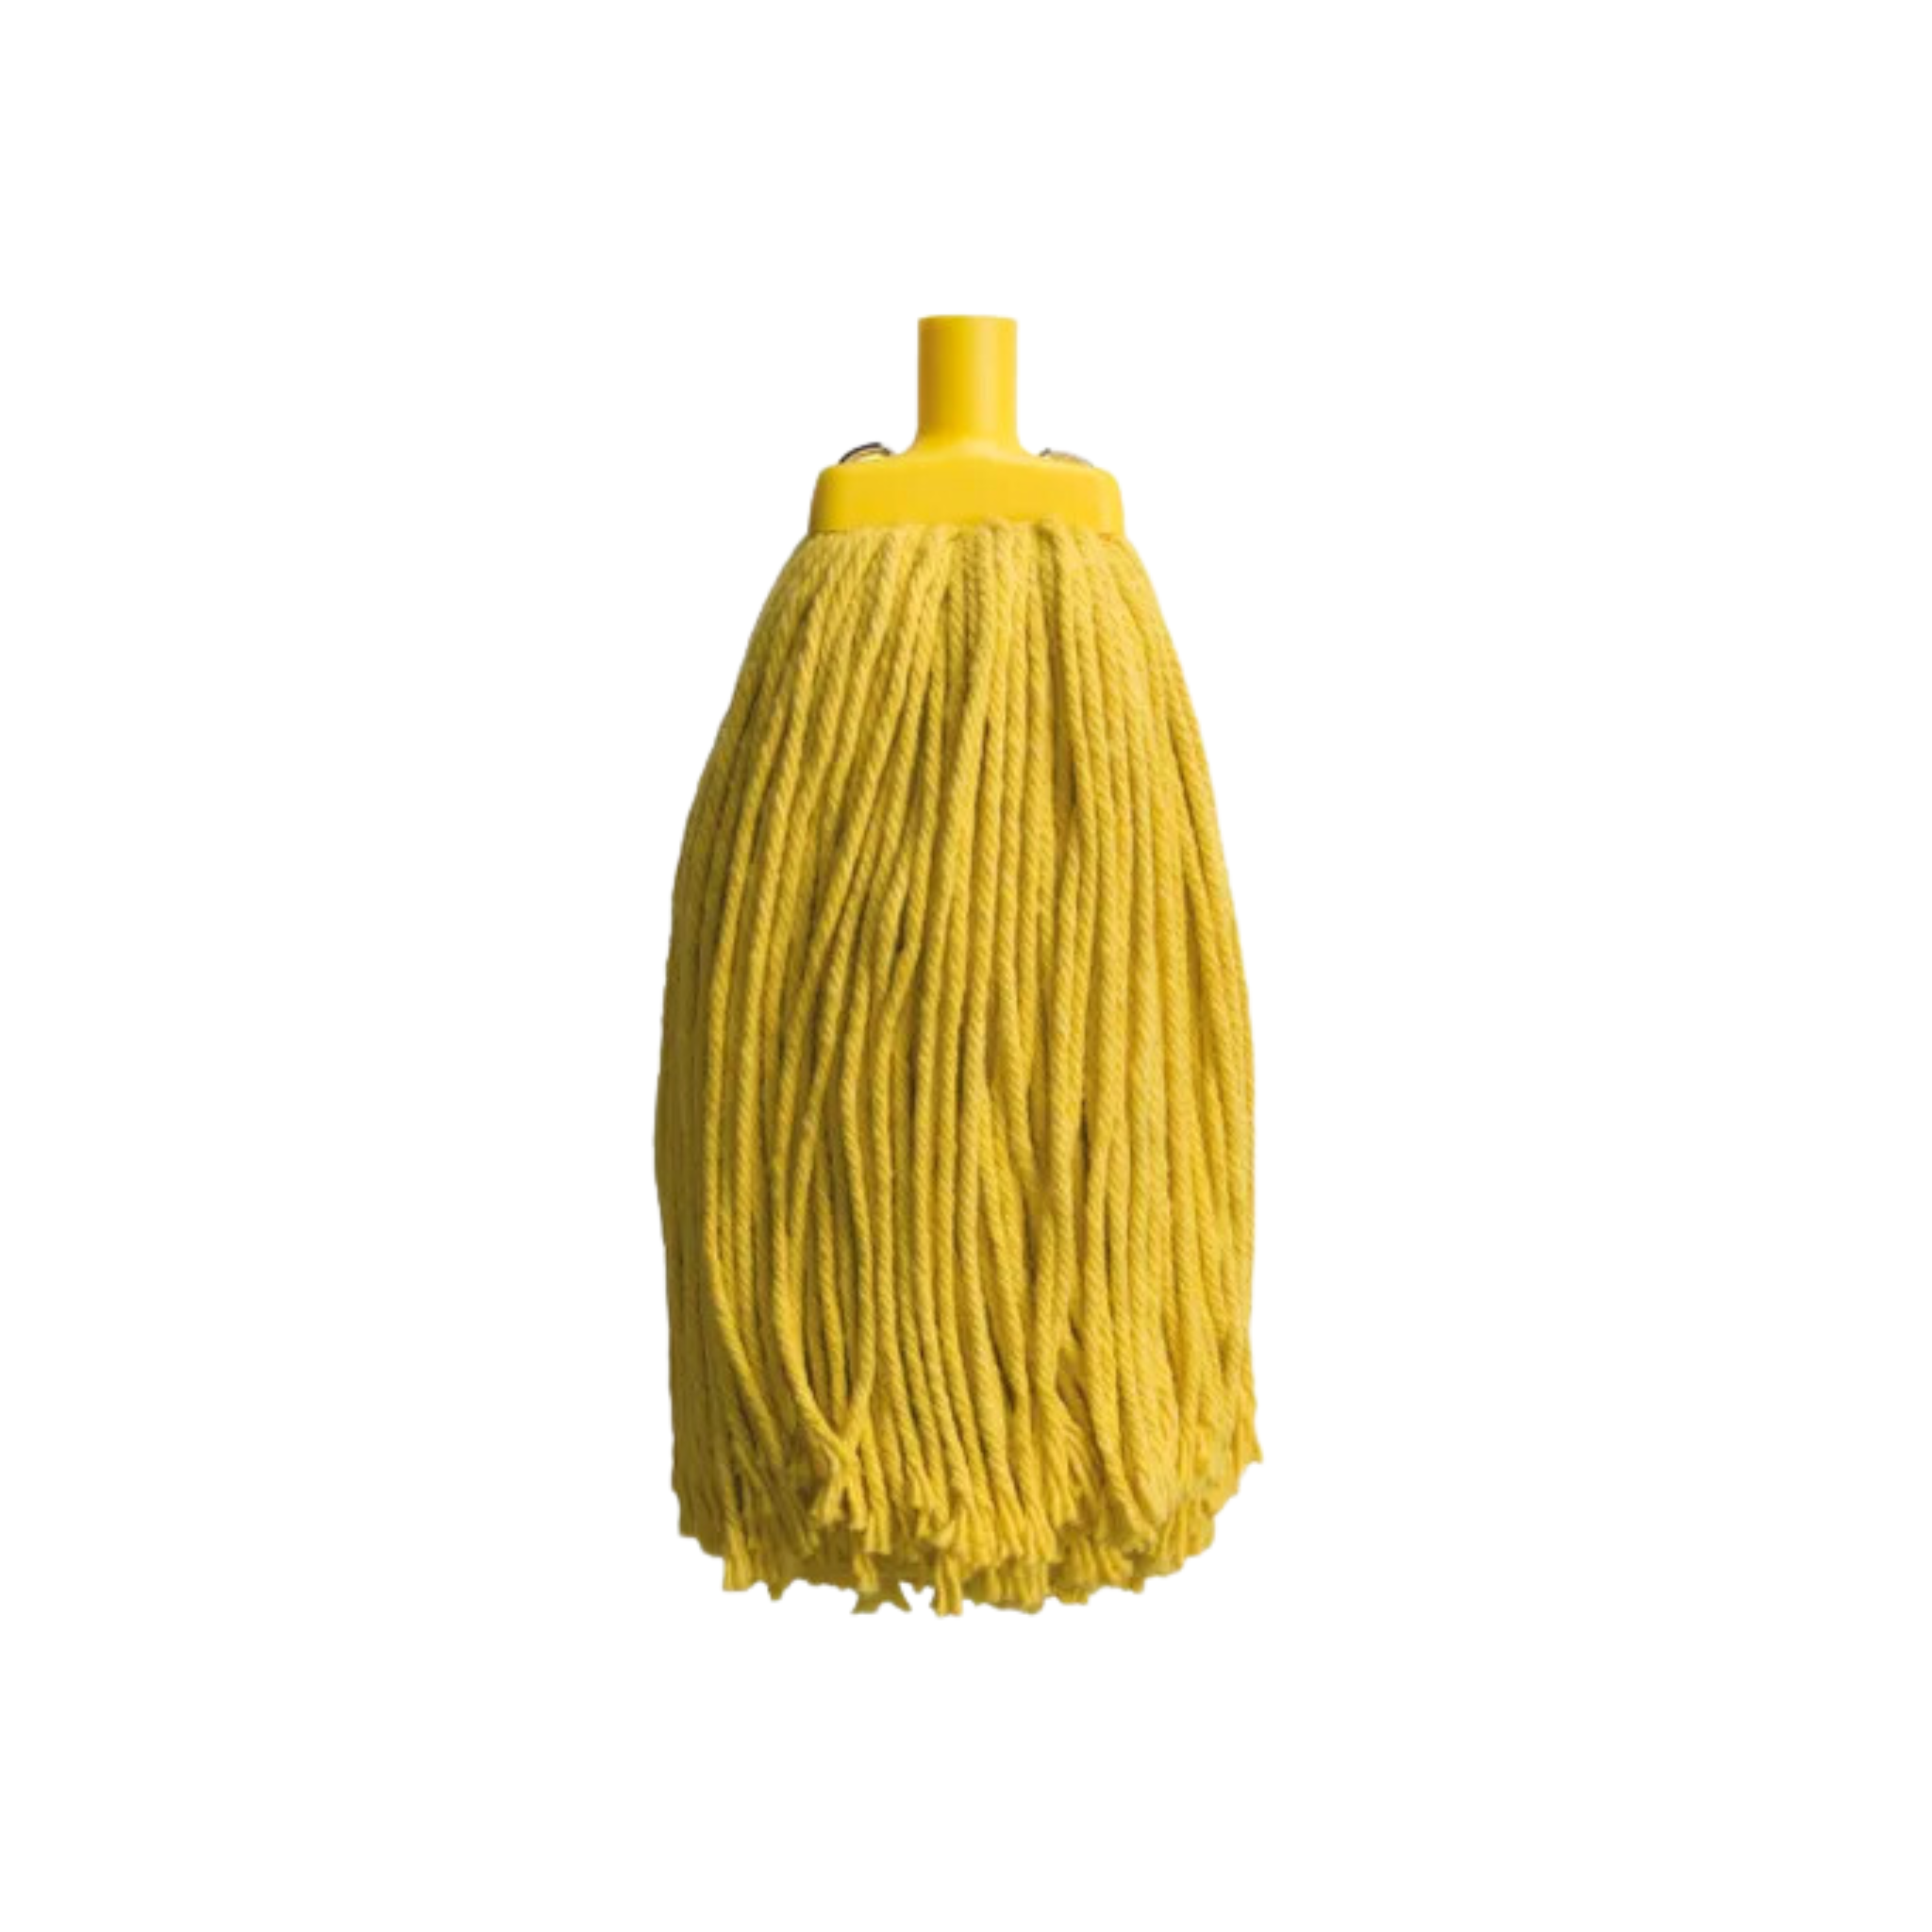 Oates Mop Head - Yellow